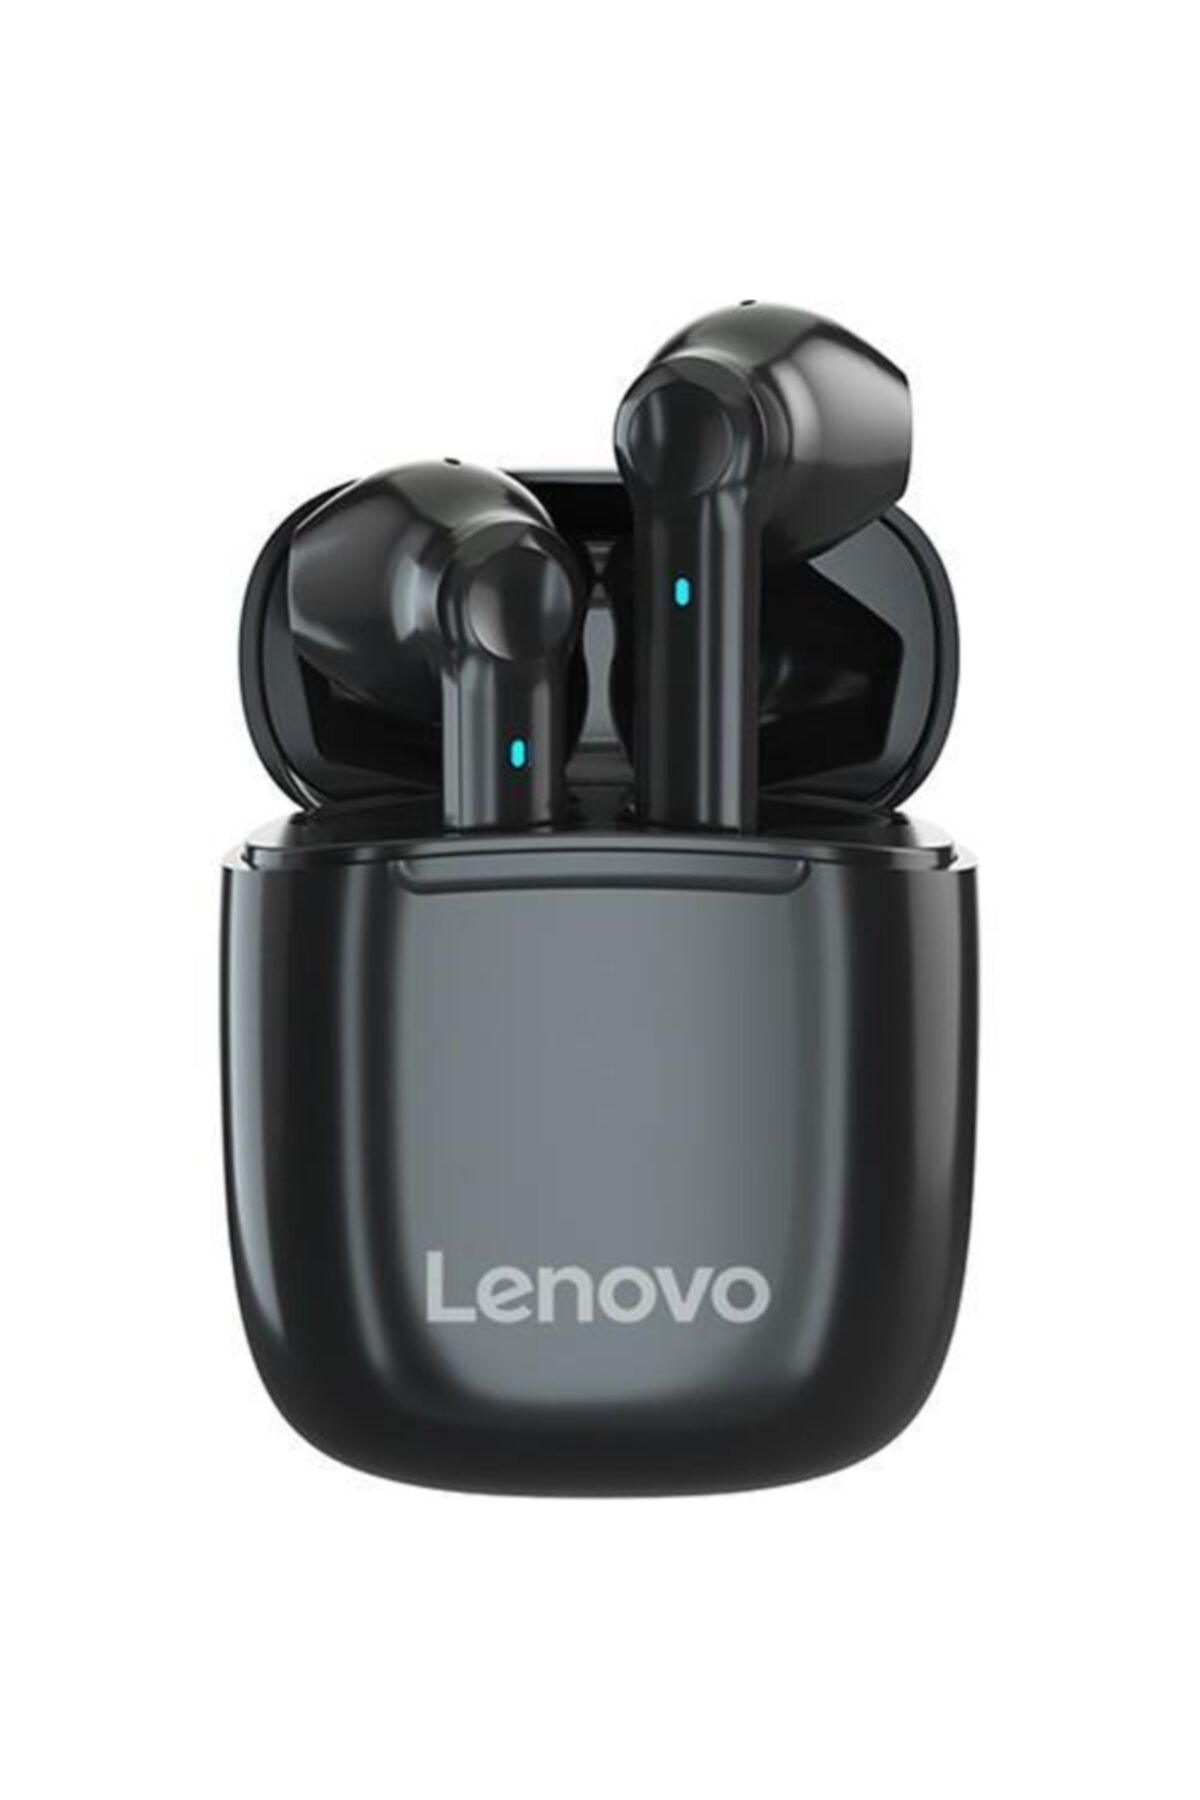 LENOVO Xt89 Kablosuz Bluetooth Kulakiçi Kulaklık - Siyah